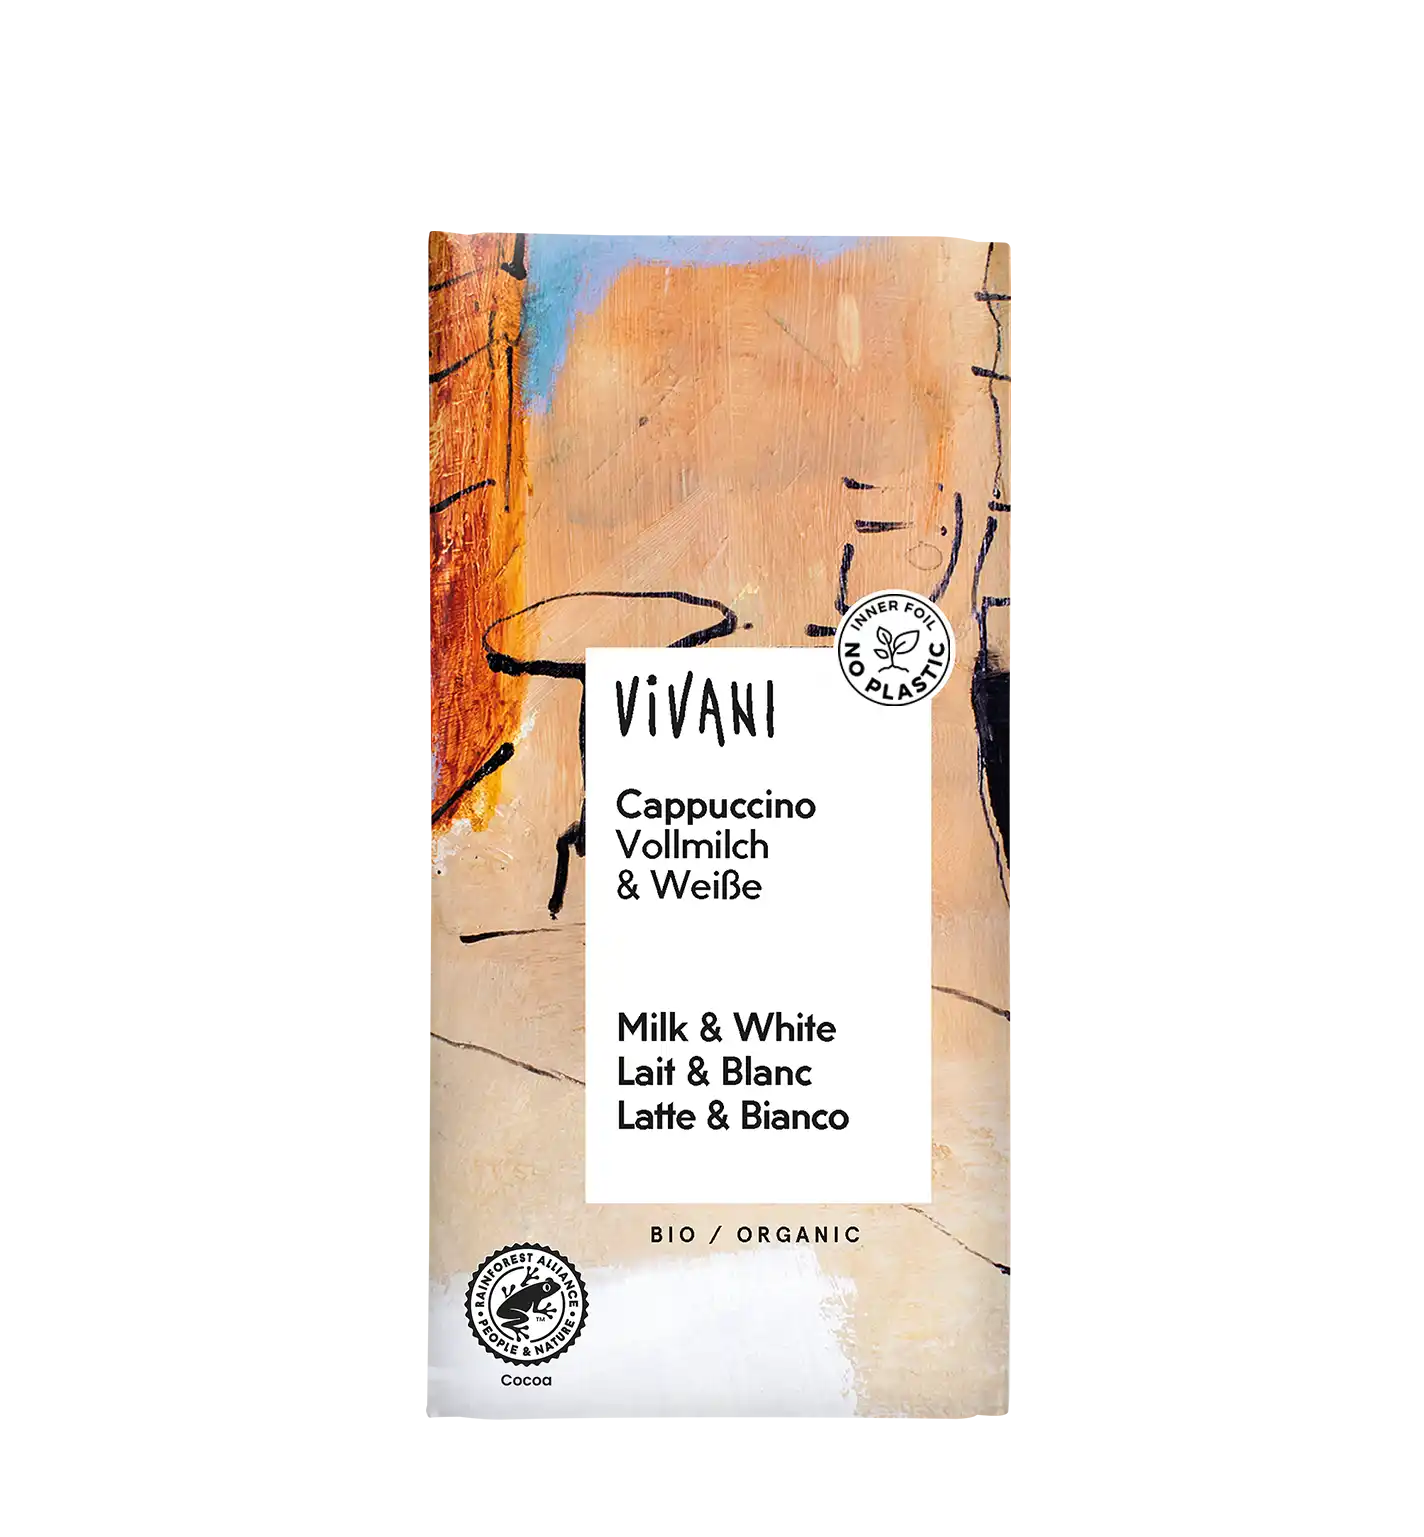 VIVANIs Bio-Schokolade Cappuccino besteht aus zwei Schichten: Vollmilch-Kaffee und Weiße